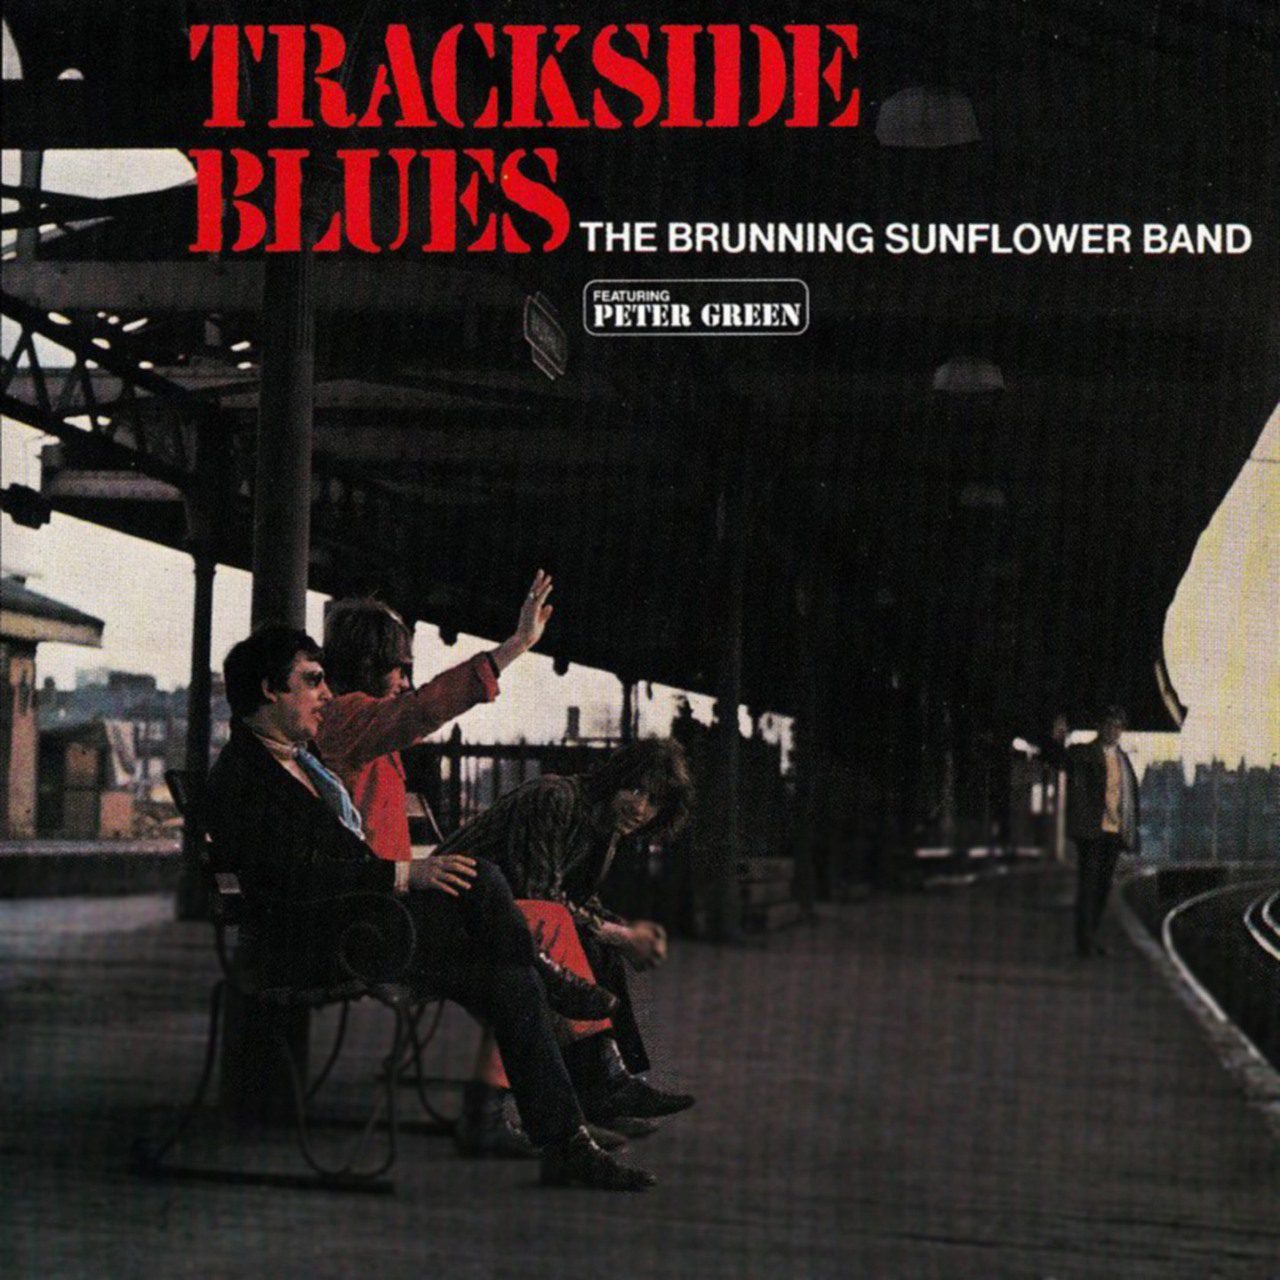 Brunning Sunflower Band – Trackside Blues cover album